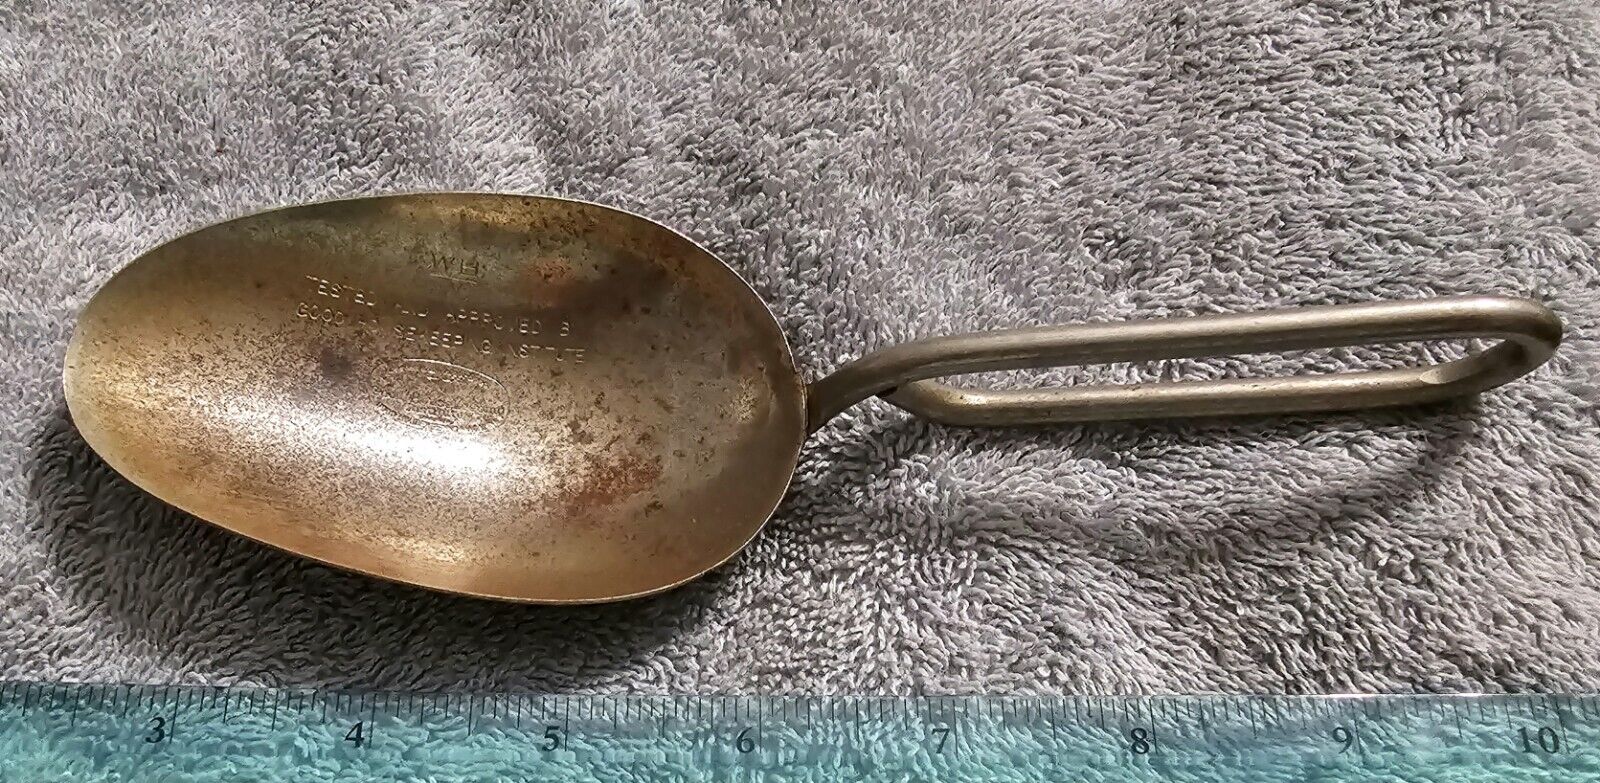 Vintage Metal Scoop 1/4 Cup Measuring Spoon Good Housekeeping Institute